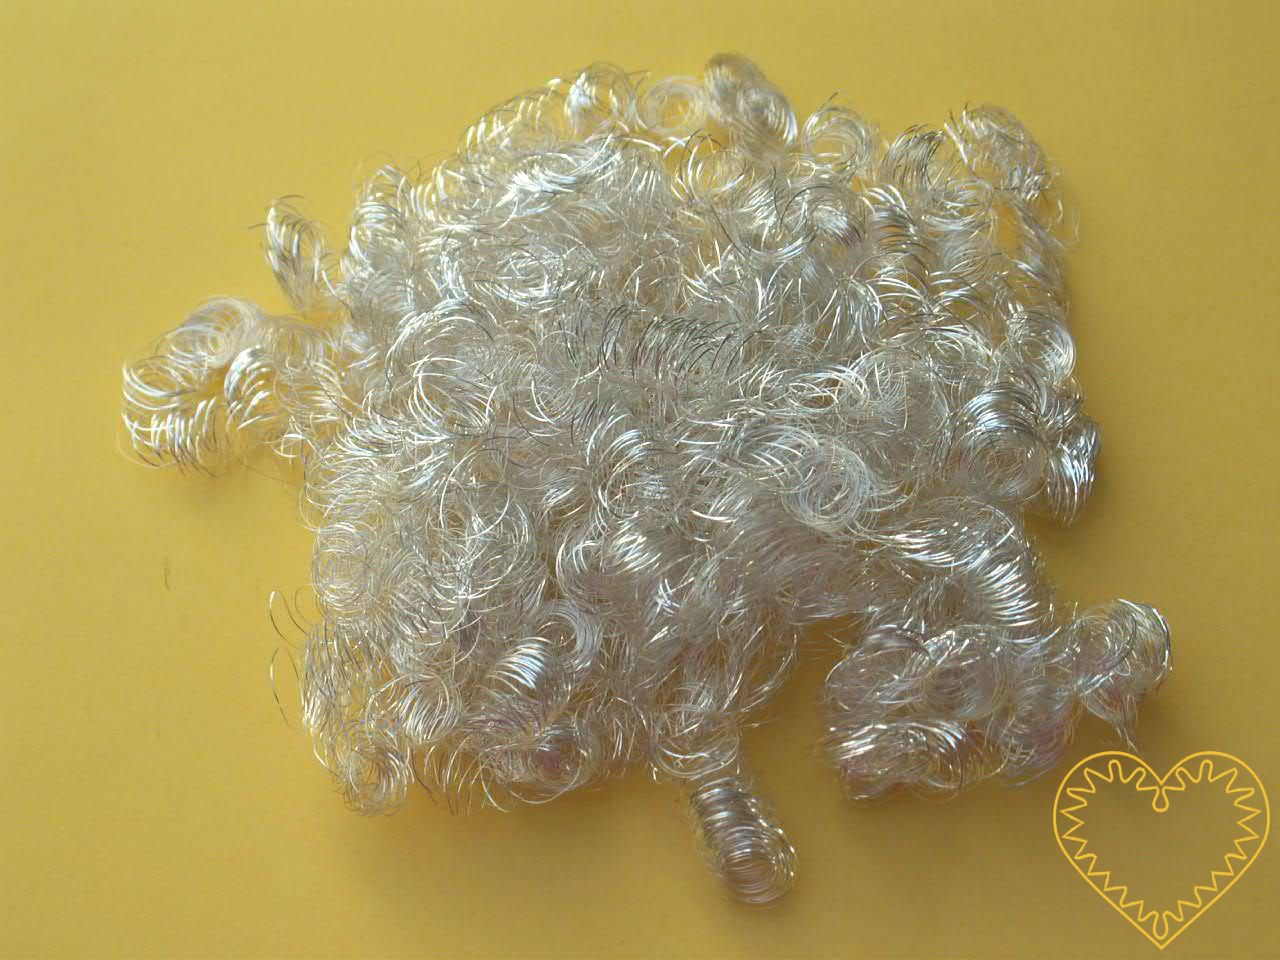 Andělské vlasy stříbrné - baroko 20 g. Mají široké využití - uplatní se při aranžování, tvorbě nejrůznějších dekorací, ale např. i jako vlásky na figurku či maňáska.